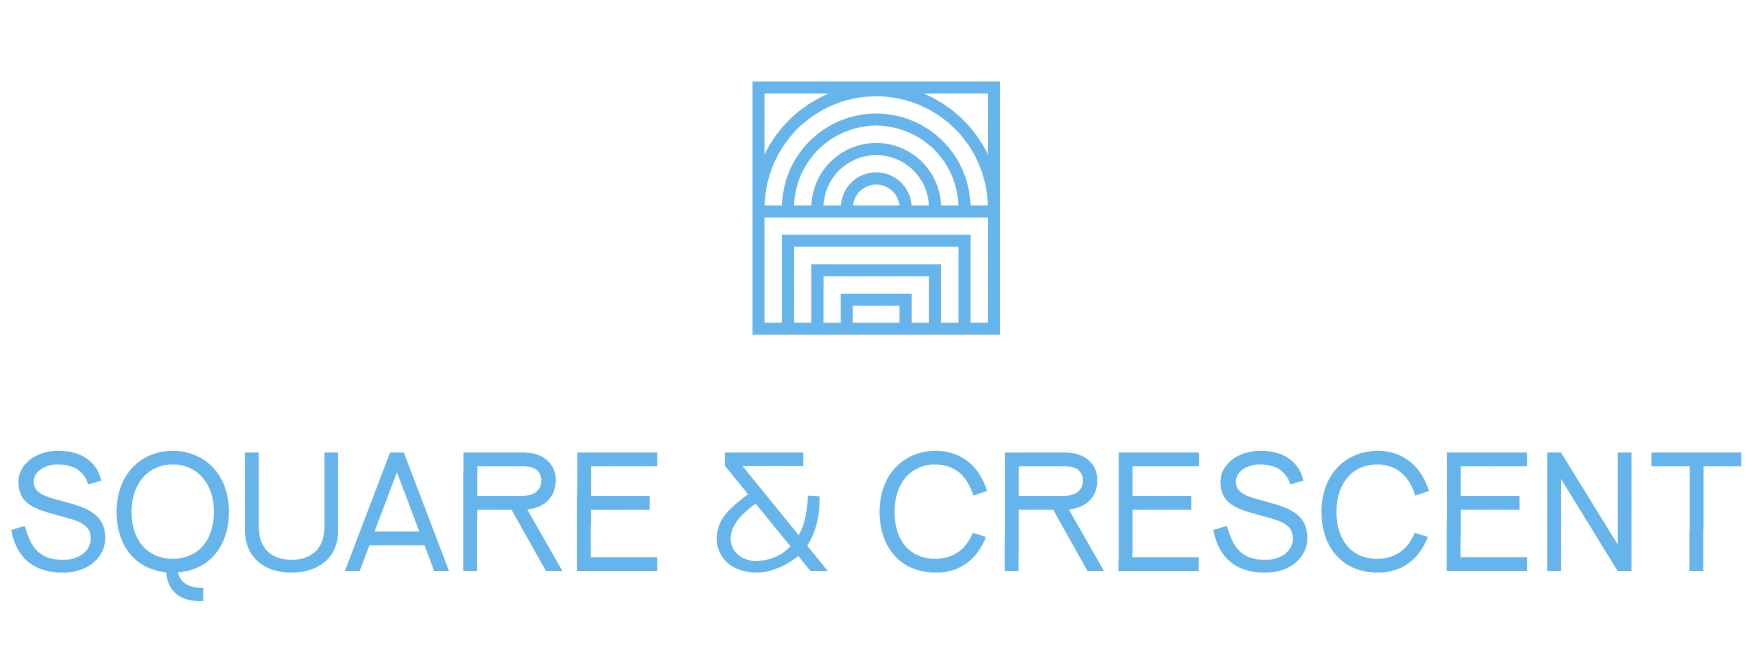 Square & Crescent Logo